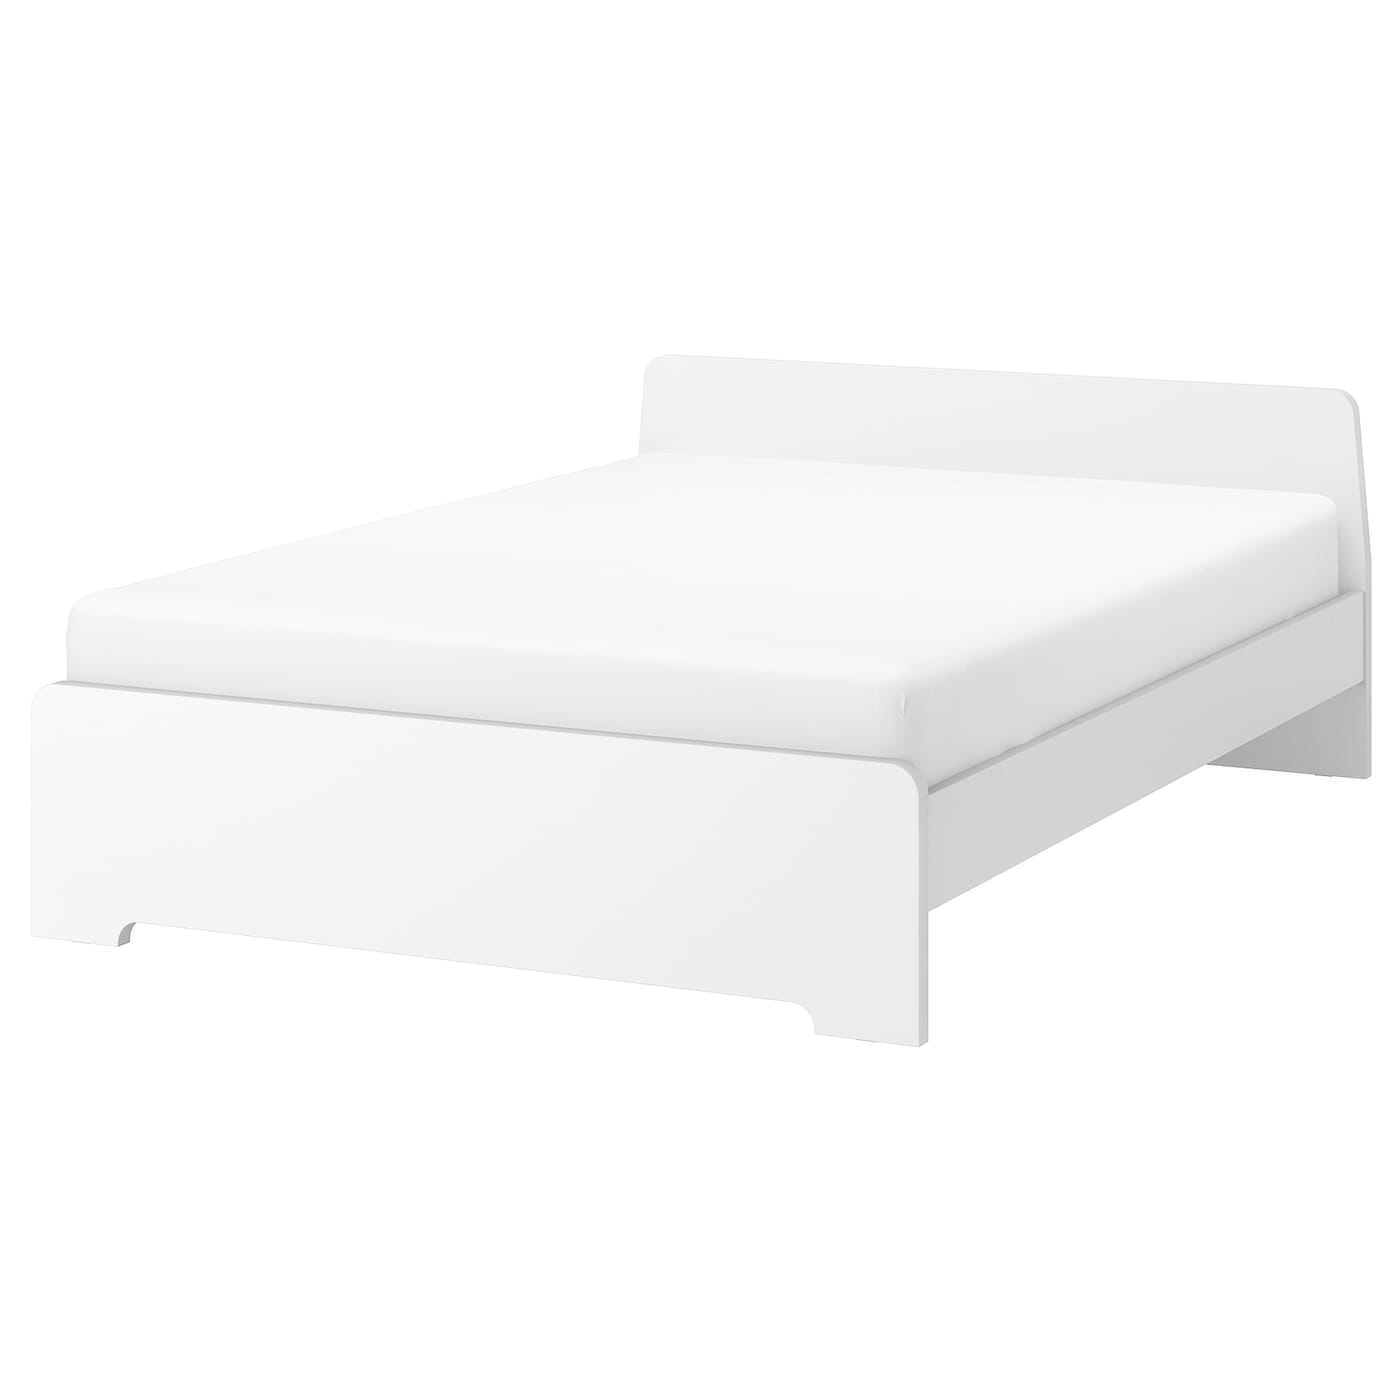 Каркас кровати - IKEA ASKVOLL, 200х140 см, белый, АСКВОЛЬ ИКЕА